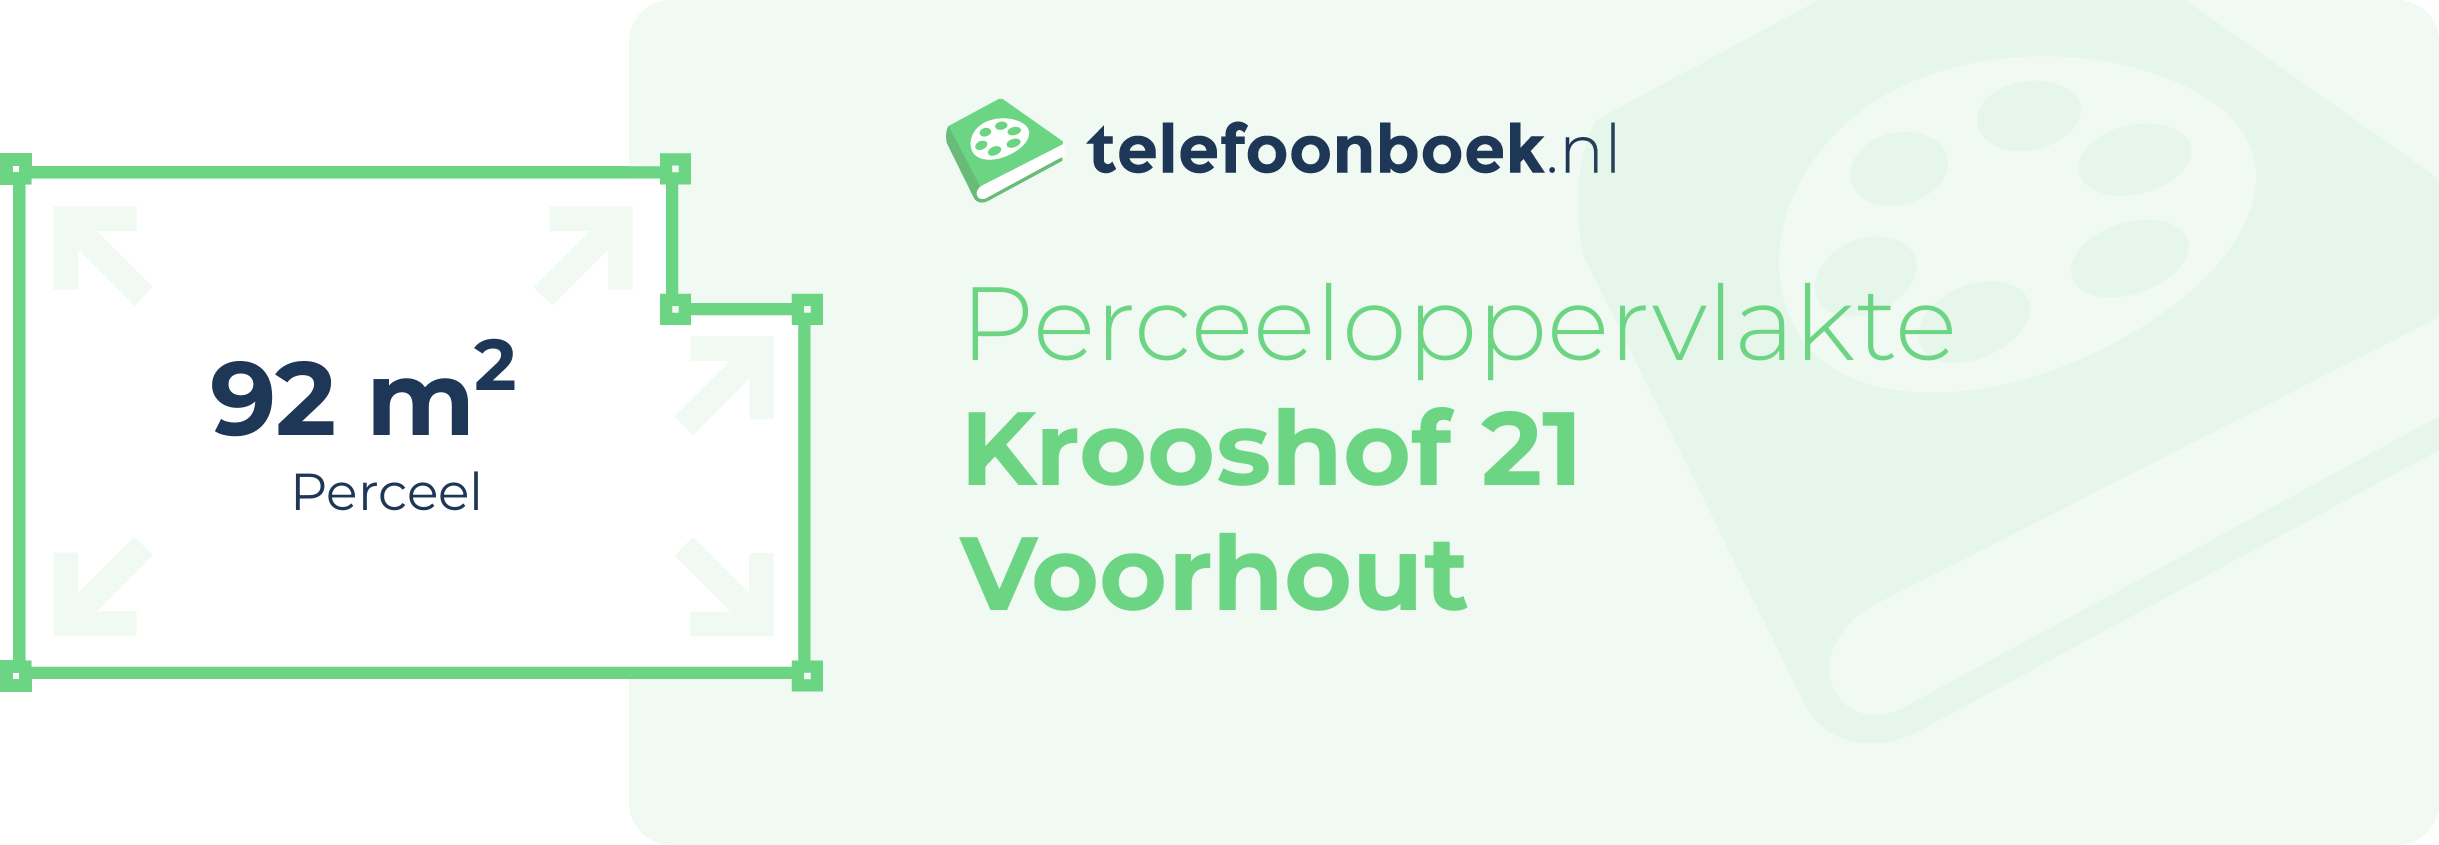 Perceeloppervlakte Krooshof 21 Voorhout